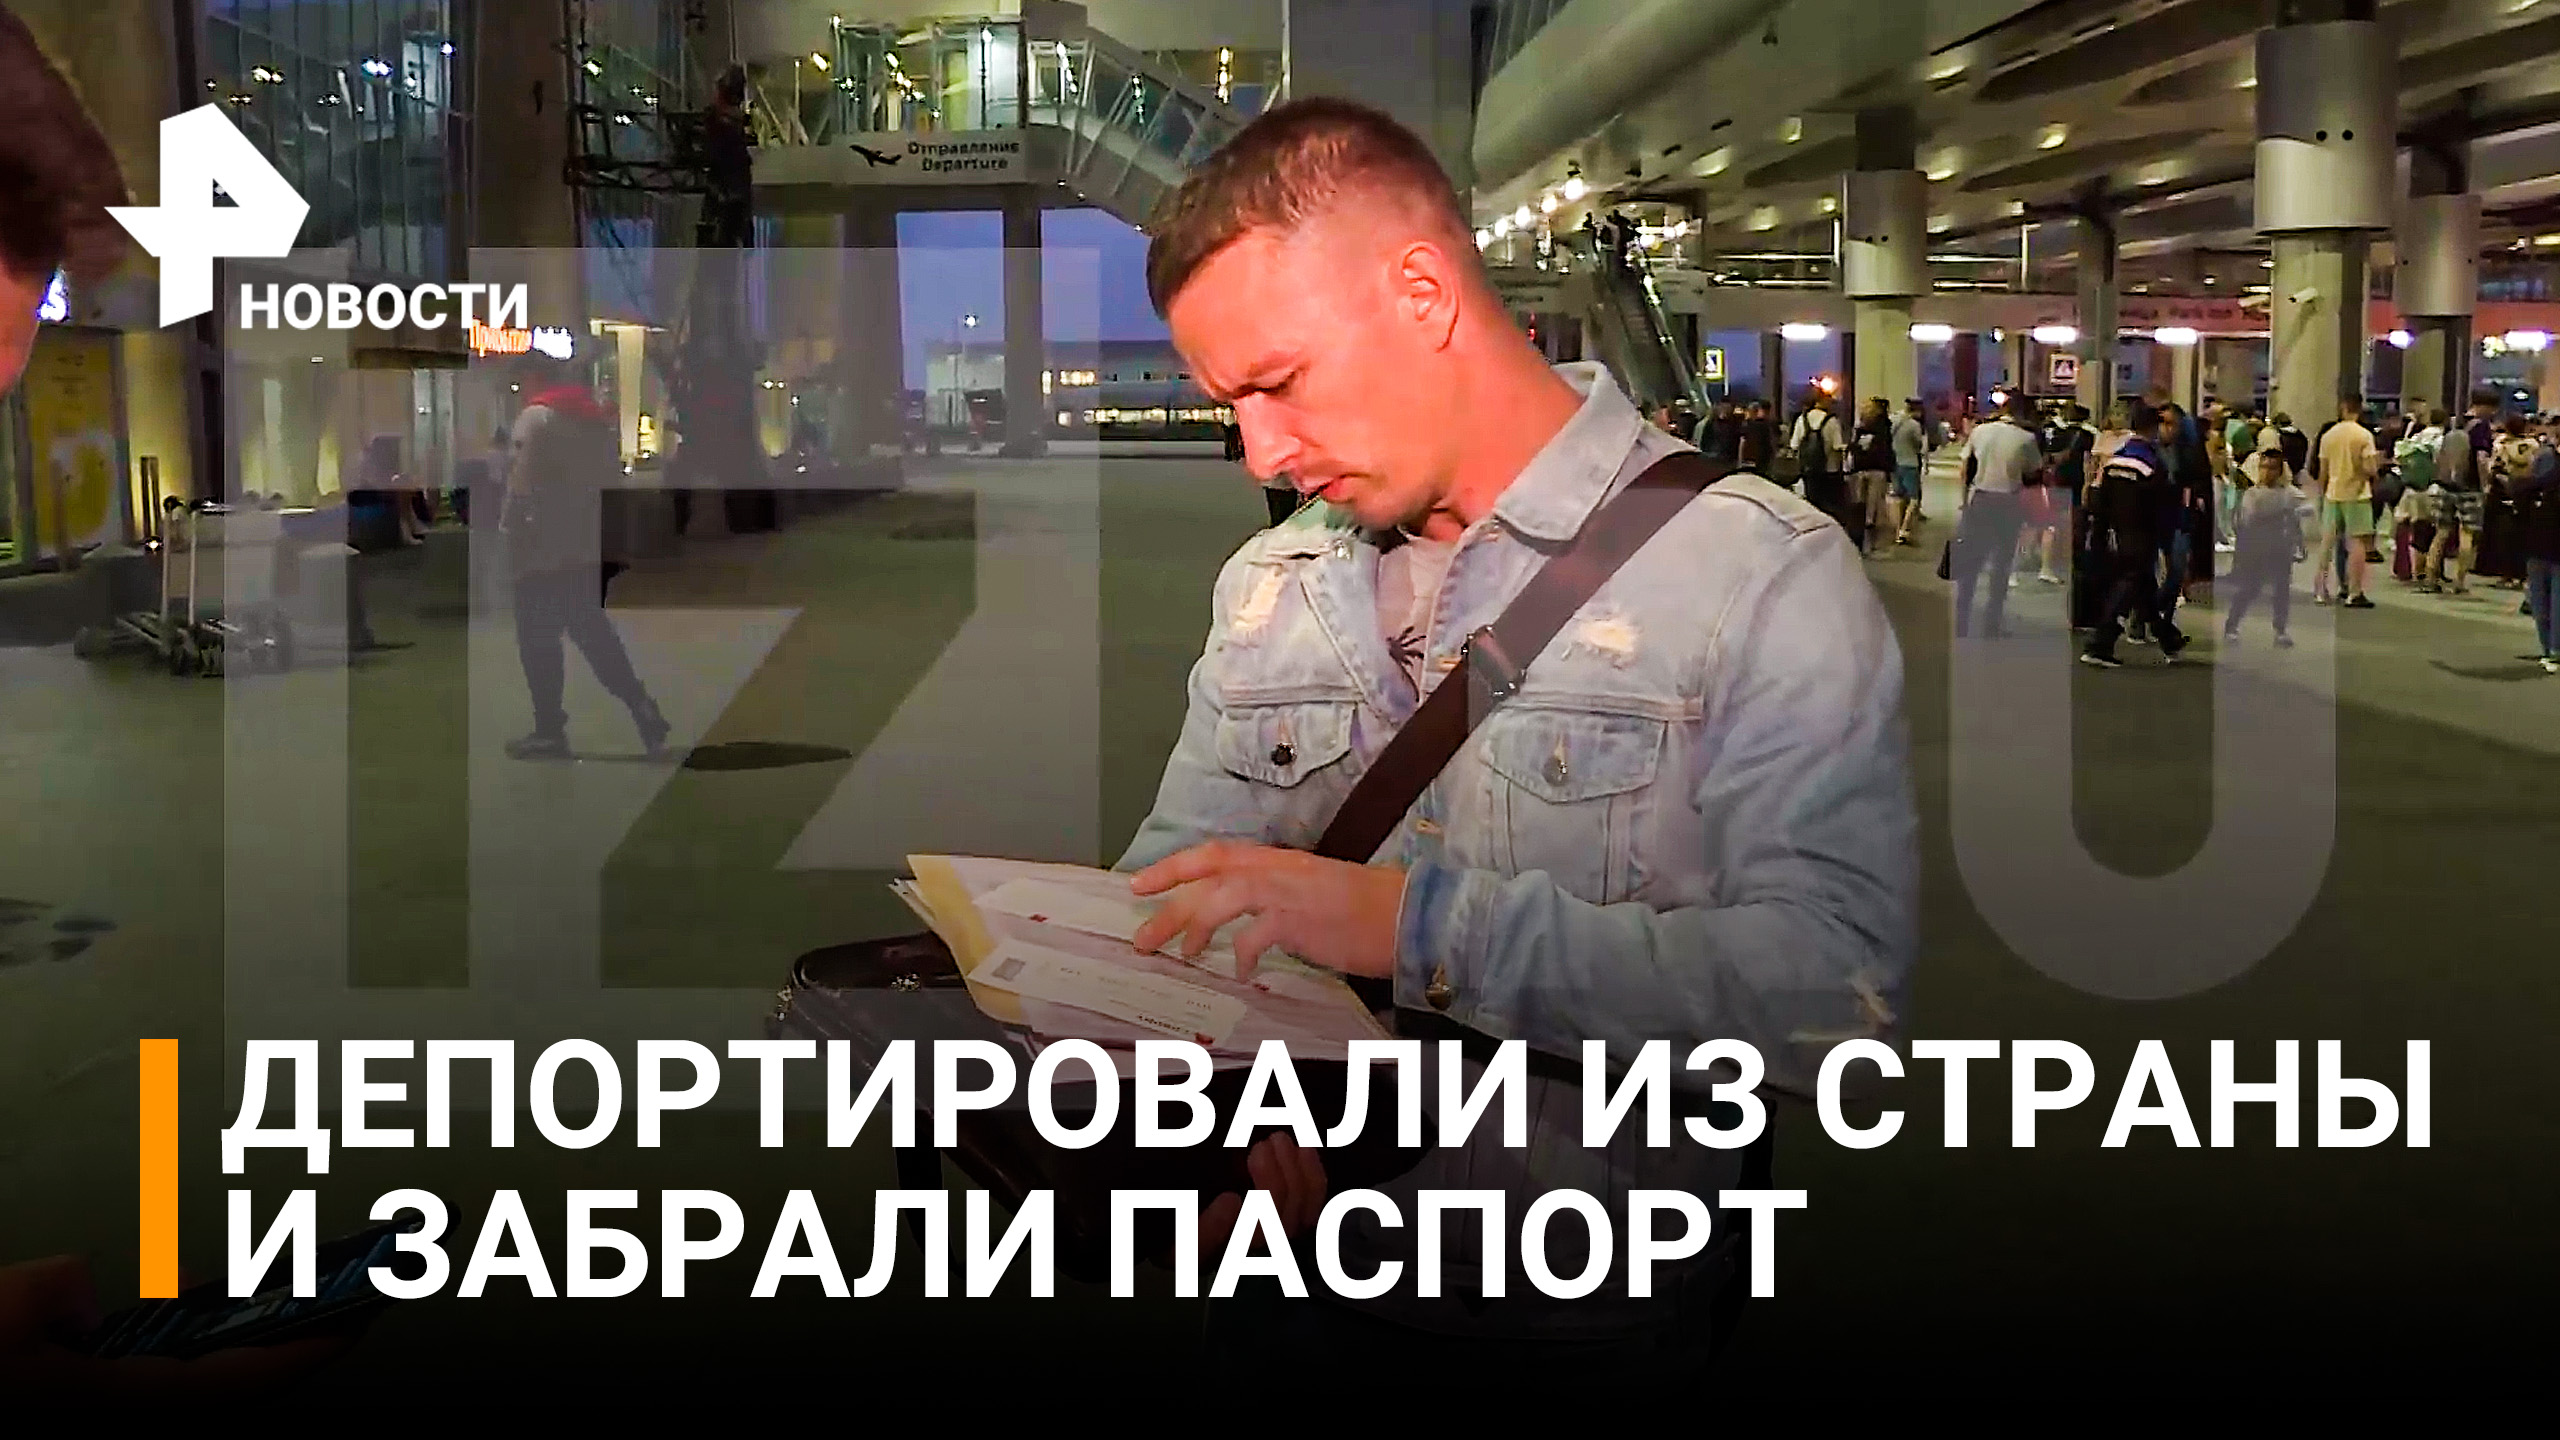 Иностранная авиакомпания два дня не отдавала паспорт россиянину после его депортации из США